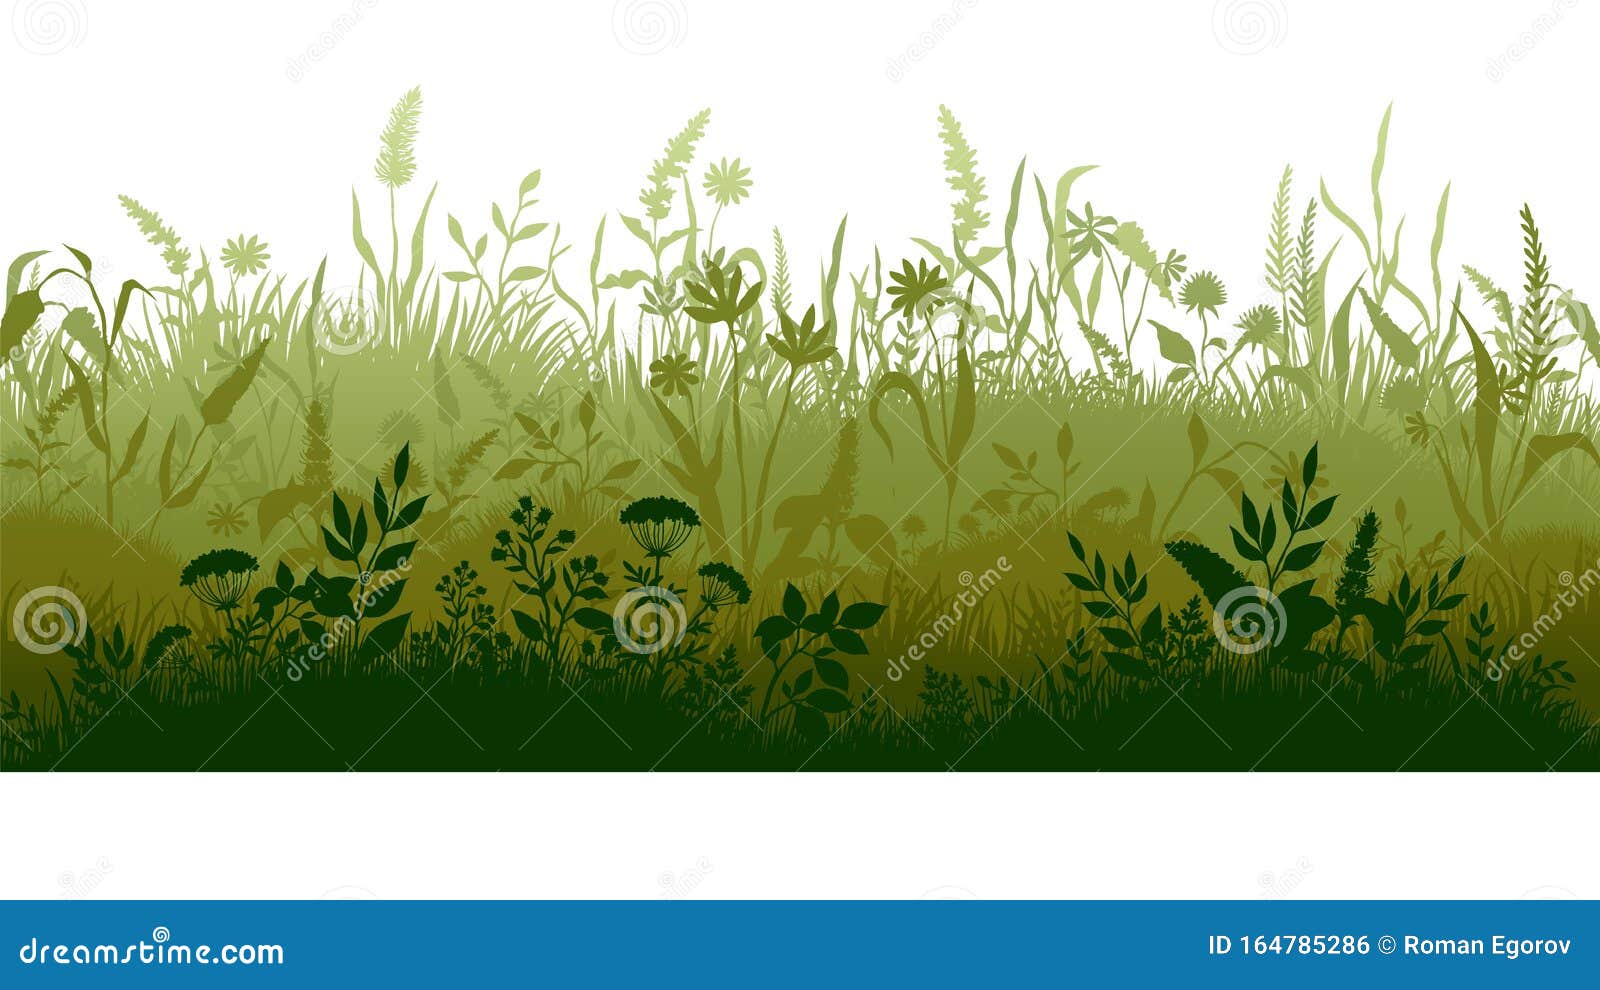 草剪湿地沼泽平原 杂草植物 卡通波浪草甸矢量草原景观向量例证 插画包括有草本 绿色